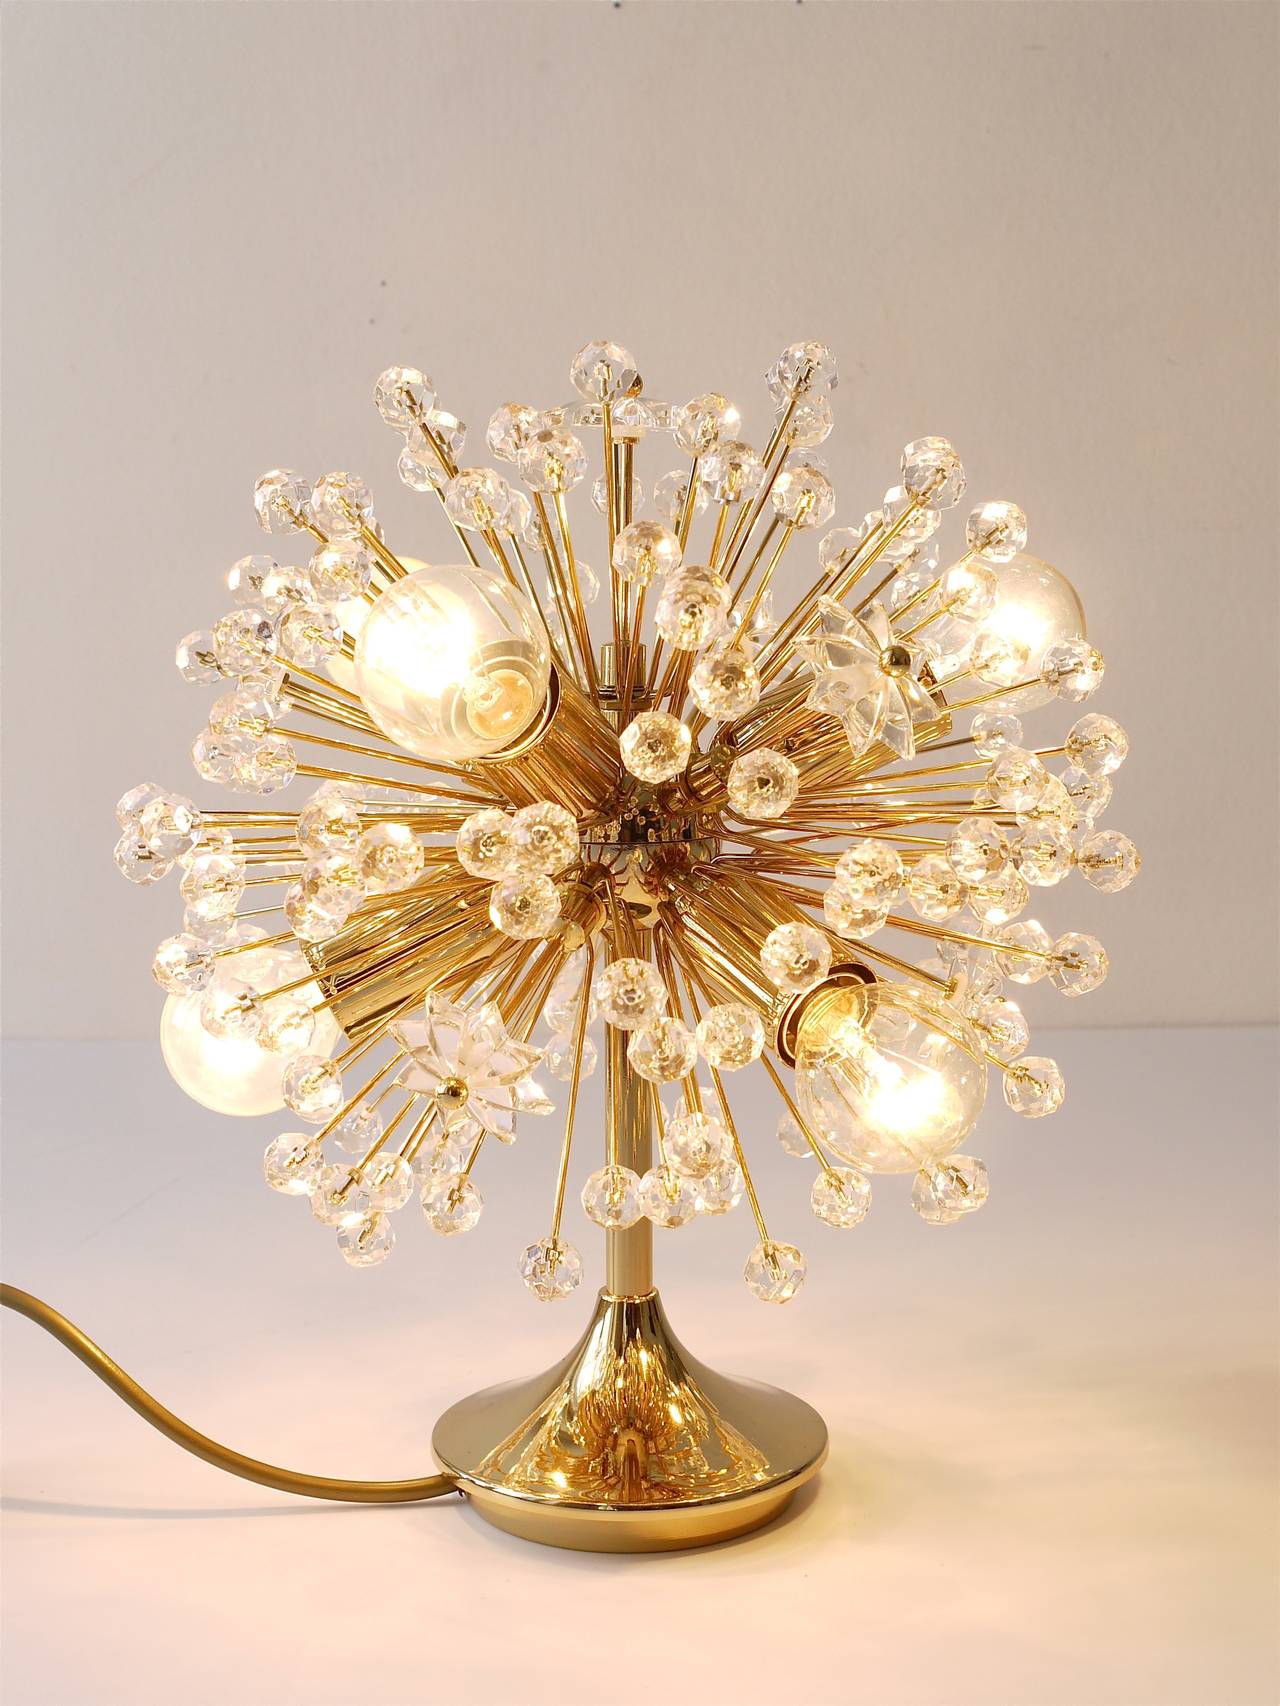 A Beautiful Blowball Sputnik Table Lamp by Emil Stejnar for Nikoll, Vienna (20. Jahrhundert)